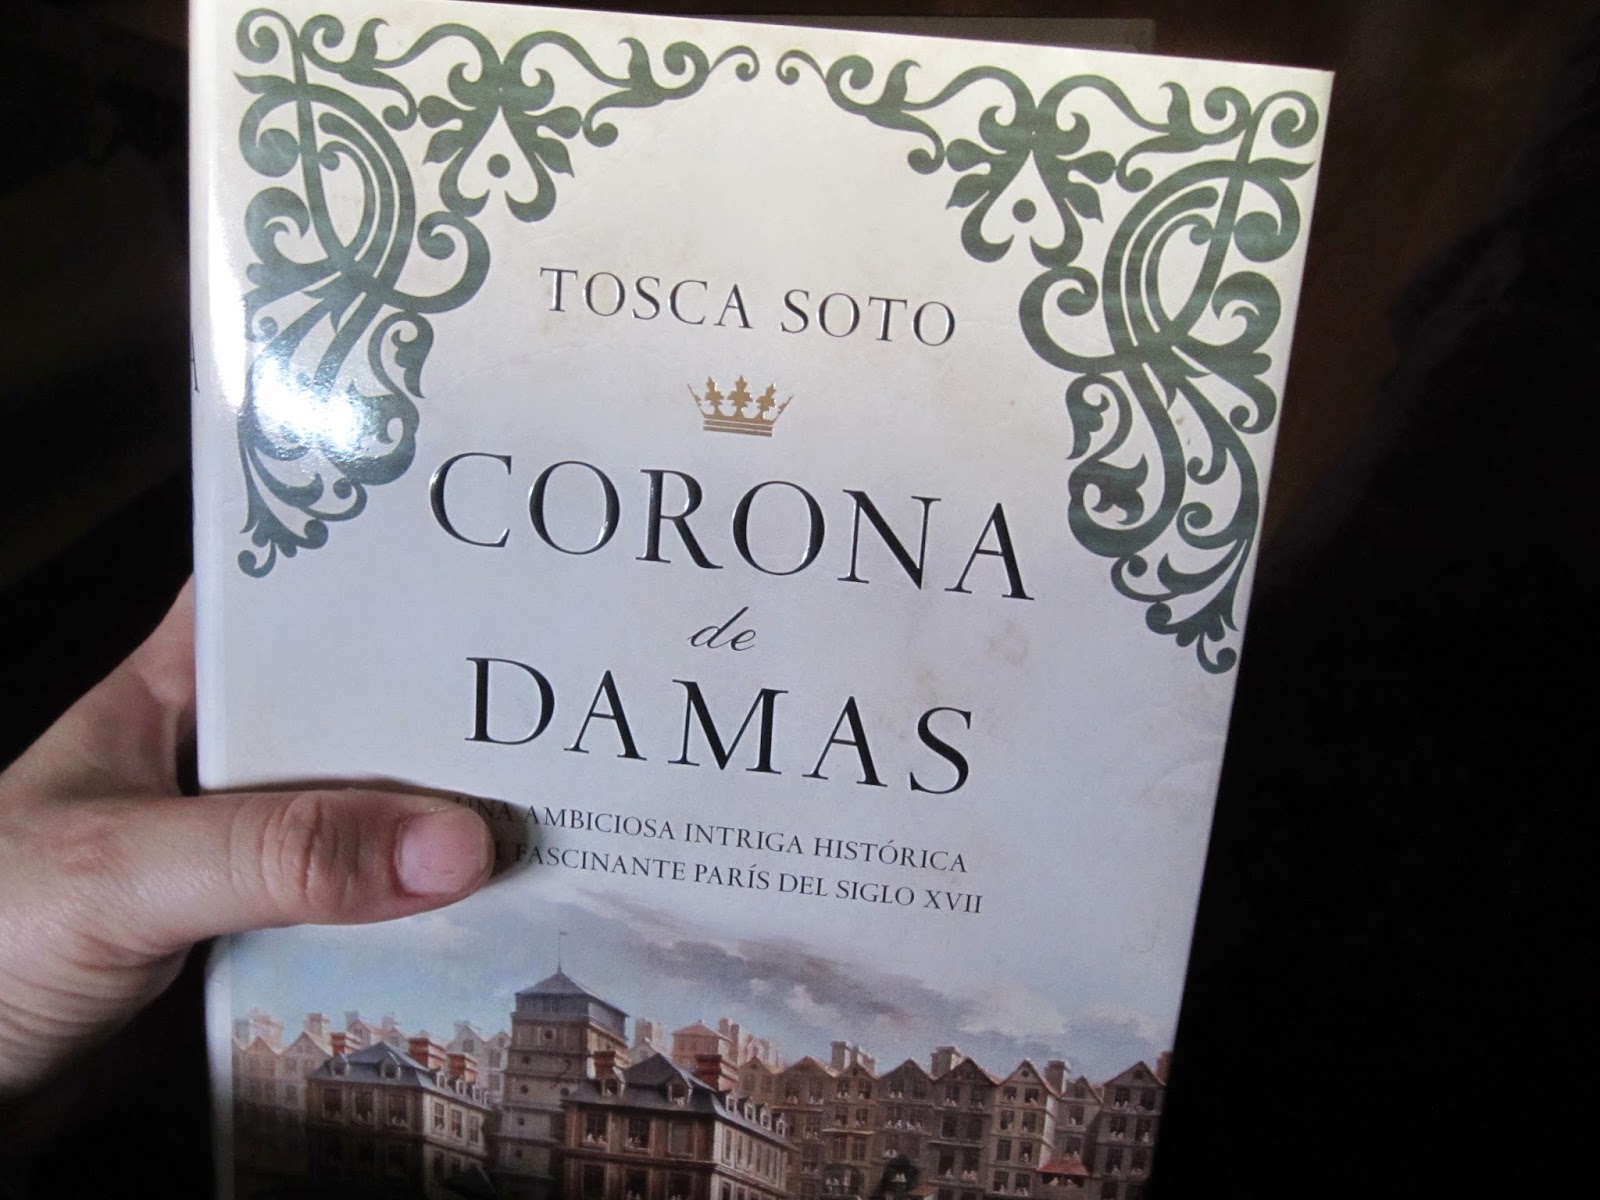  Corona de damas, Tosca Soto